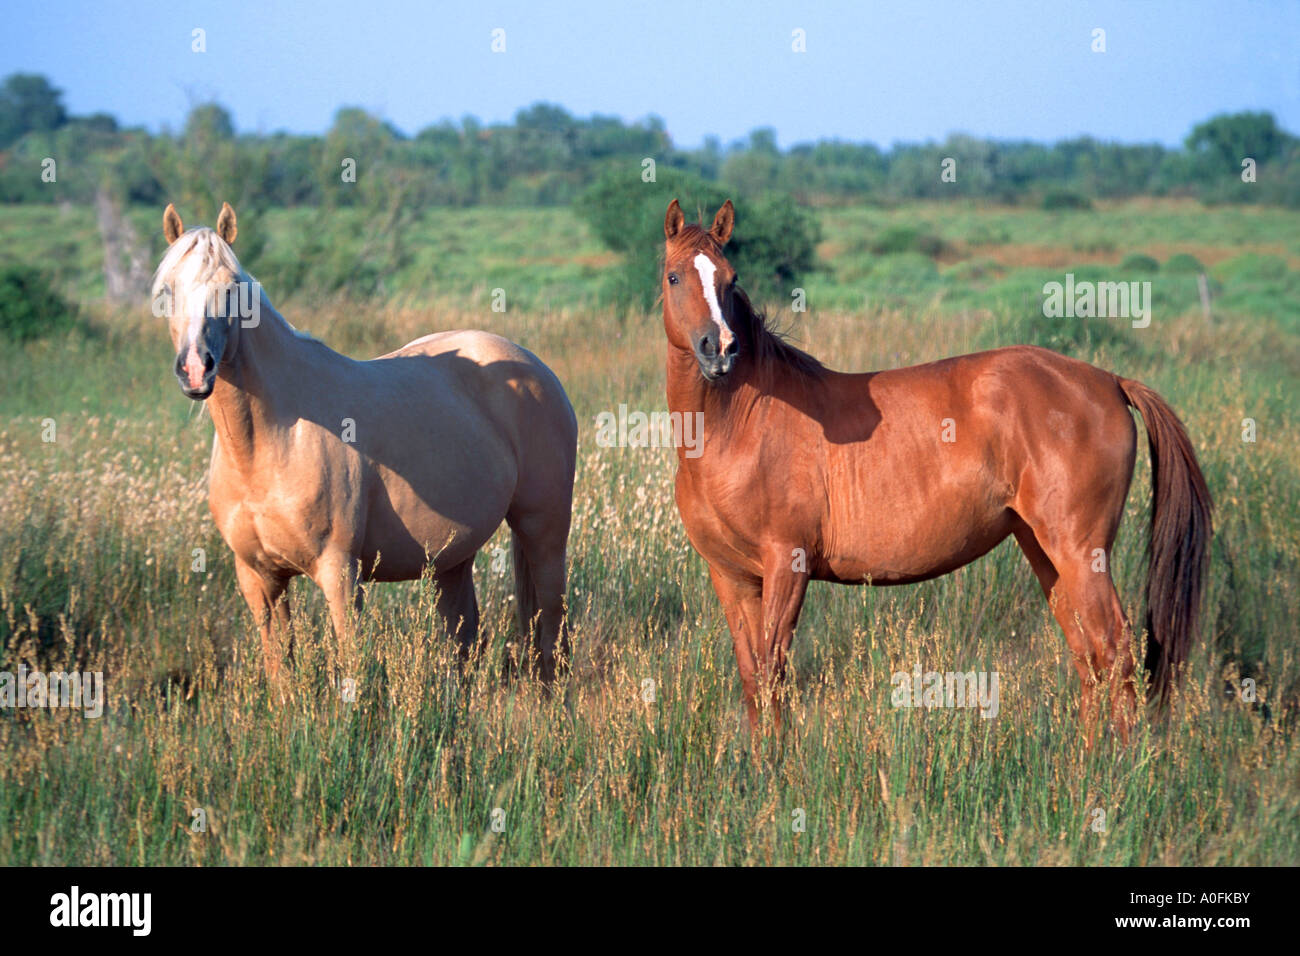 Cheval Haflinger (Equus przewalskii f. caballus), deux chevaux dans un pré Banque D'Images